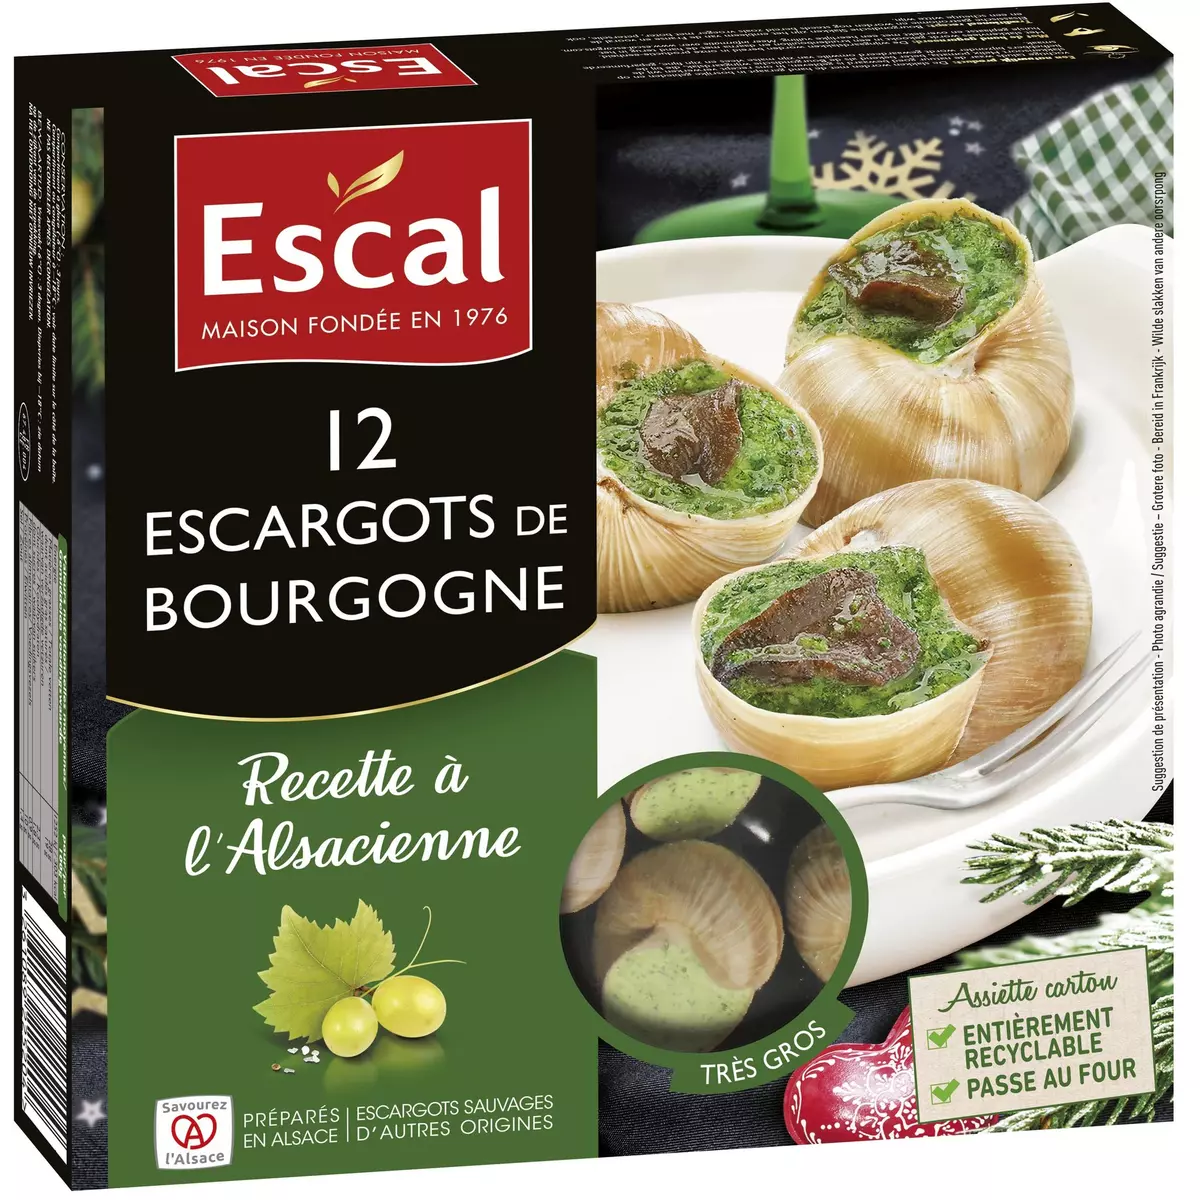 ESCAL Escargots de Bourgogne à l'Alsacienne 12 pièces 125g